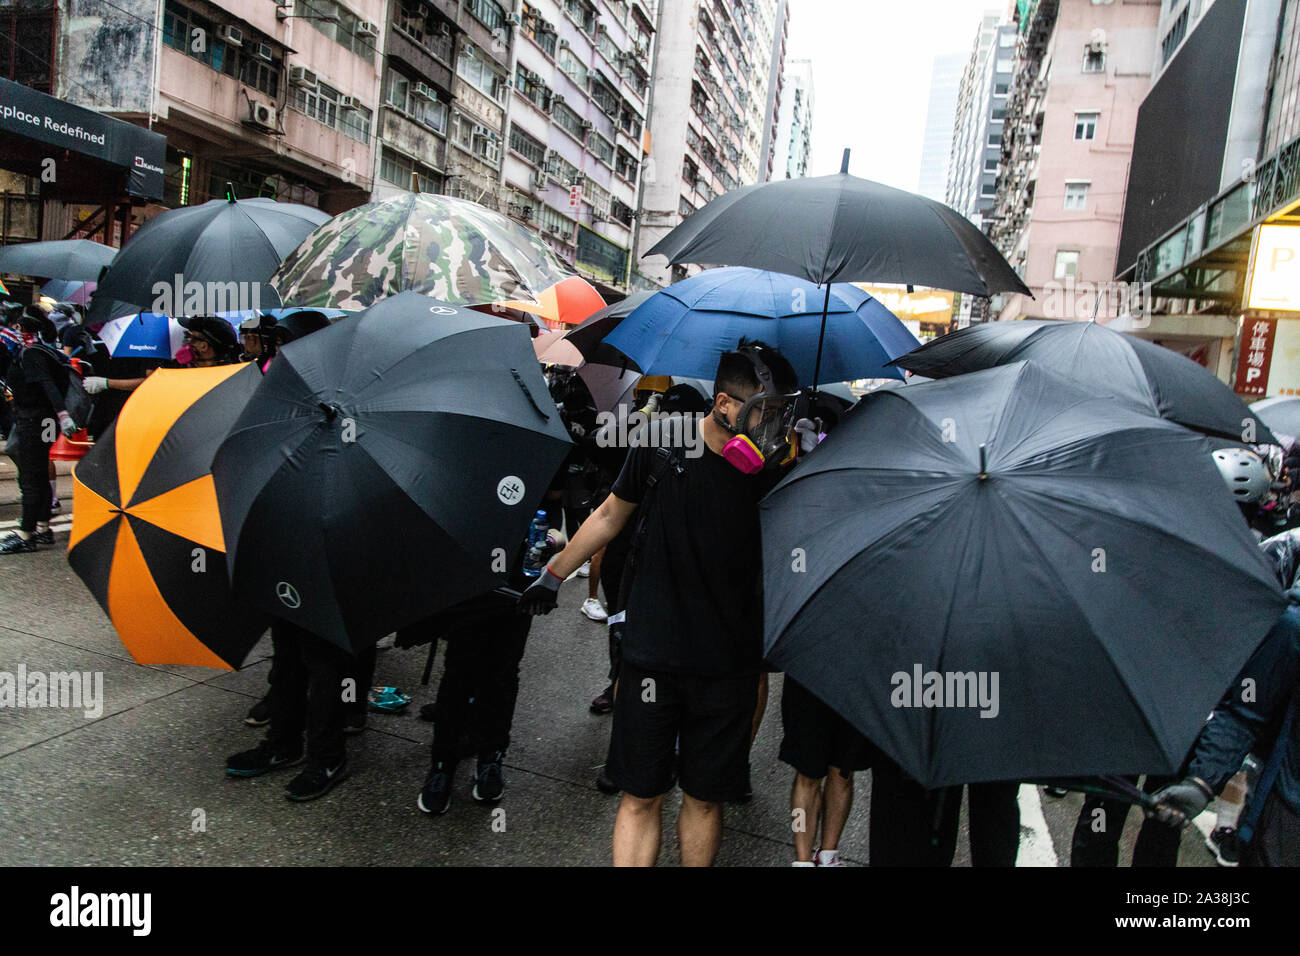 Die demonstranten Abdeckung hinter Regenschirmen während der Demonstration nehmen. Die Eingabe der 18 Wochenende der Unruhen, Demonstranten marschierten im Regen nach einer Anti-mask Gesetz wurde in einer Bemühung, Demonstrationen abzuhalten. Die Demonstranten skandierten Parolen und fuhr fort zu Fragen für die fünf Forderungen erfüllt werden. Die Demonstranten zu Zusammenstößen zwischen Polizei und wurden mit Gas, Gummigeschossen getroffen, und einer Wasserkanone bis mehrere wurden schließlich verhaftet. Stockfoto